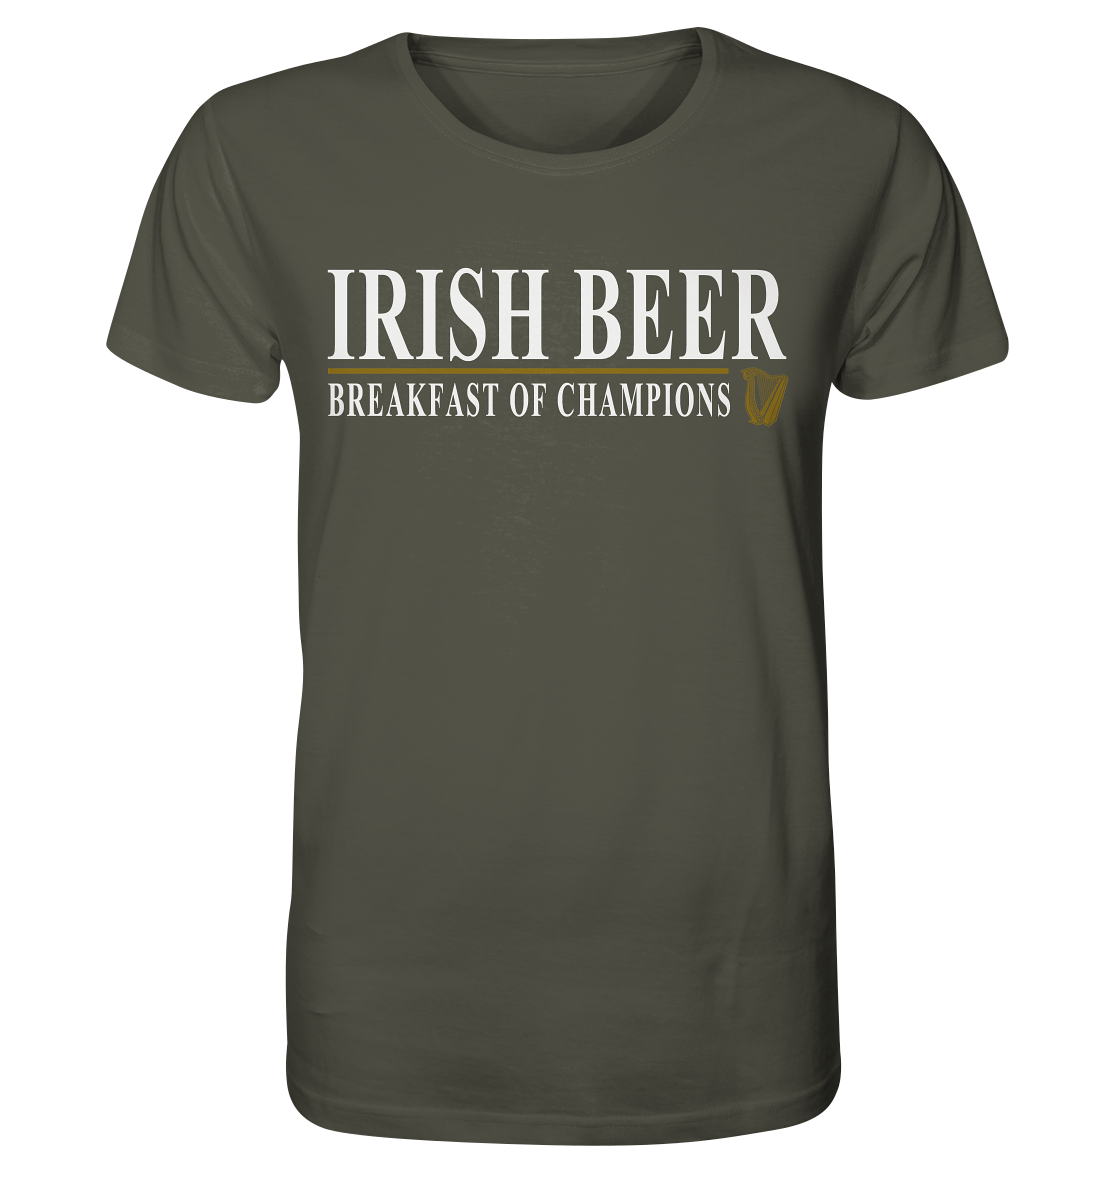 Irish Beer "Breakfast Of Champions" - Organic Shirt